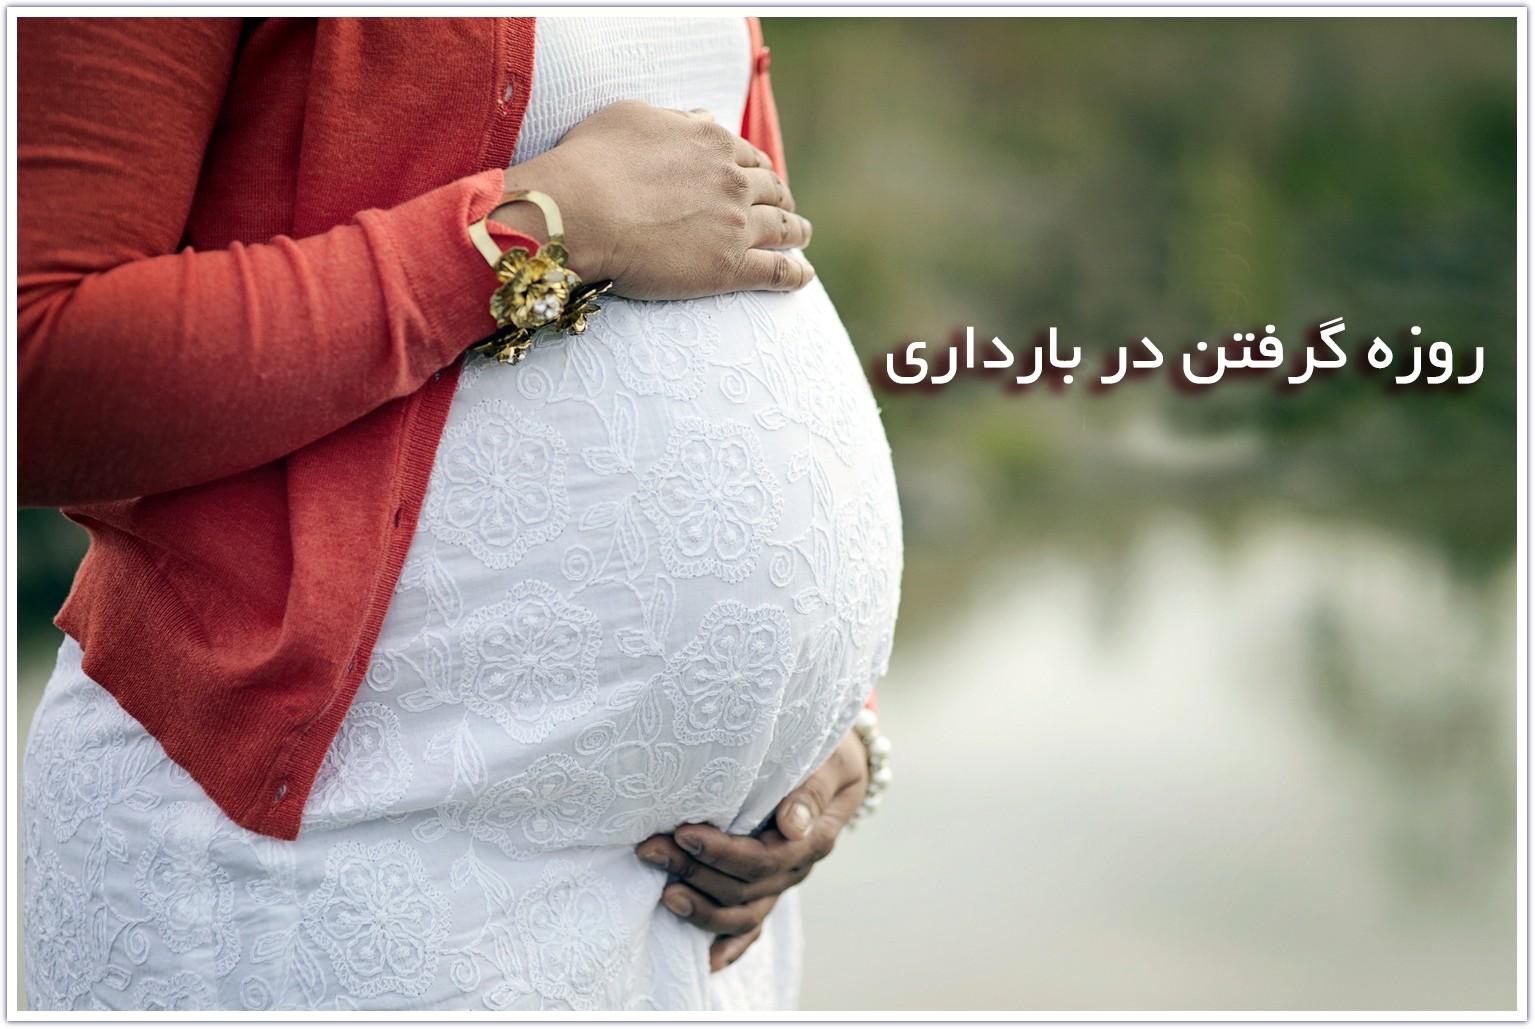 خانم های باردار میتوانند روزه بگیرند! | روزه گرفتن در بارداری کدام ماه مجاز و کدام ماه ممنوع؟